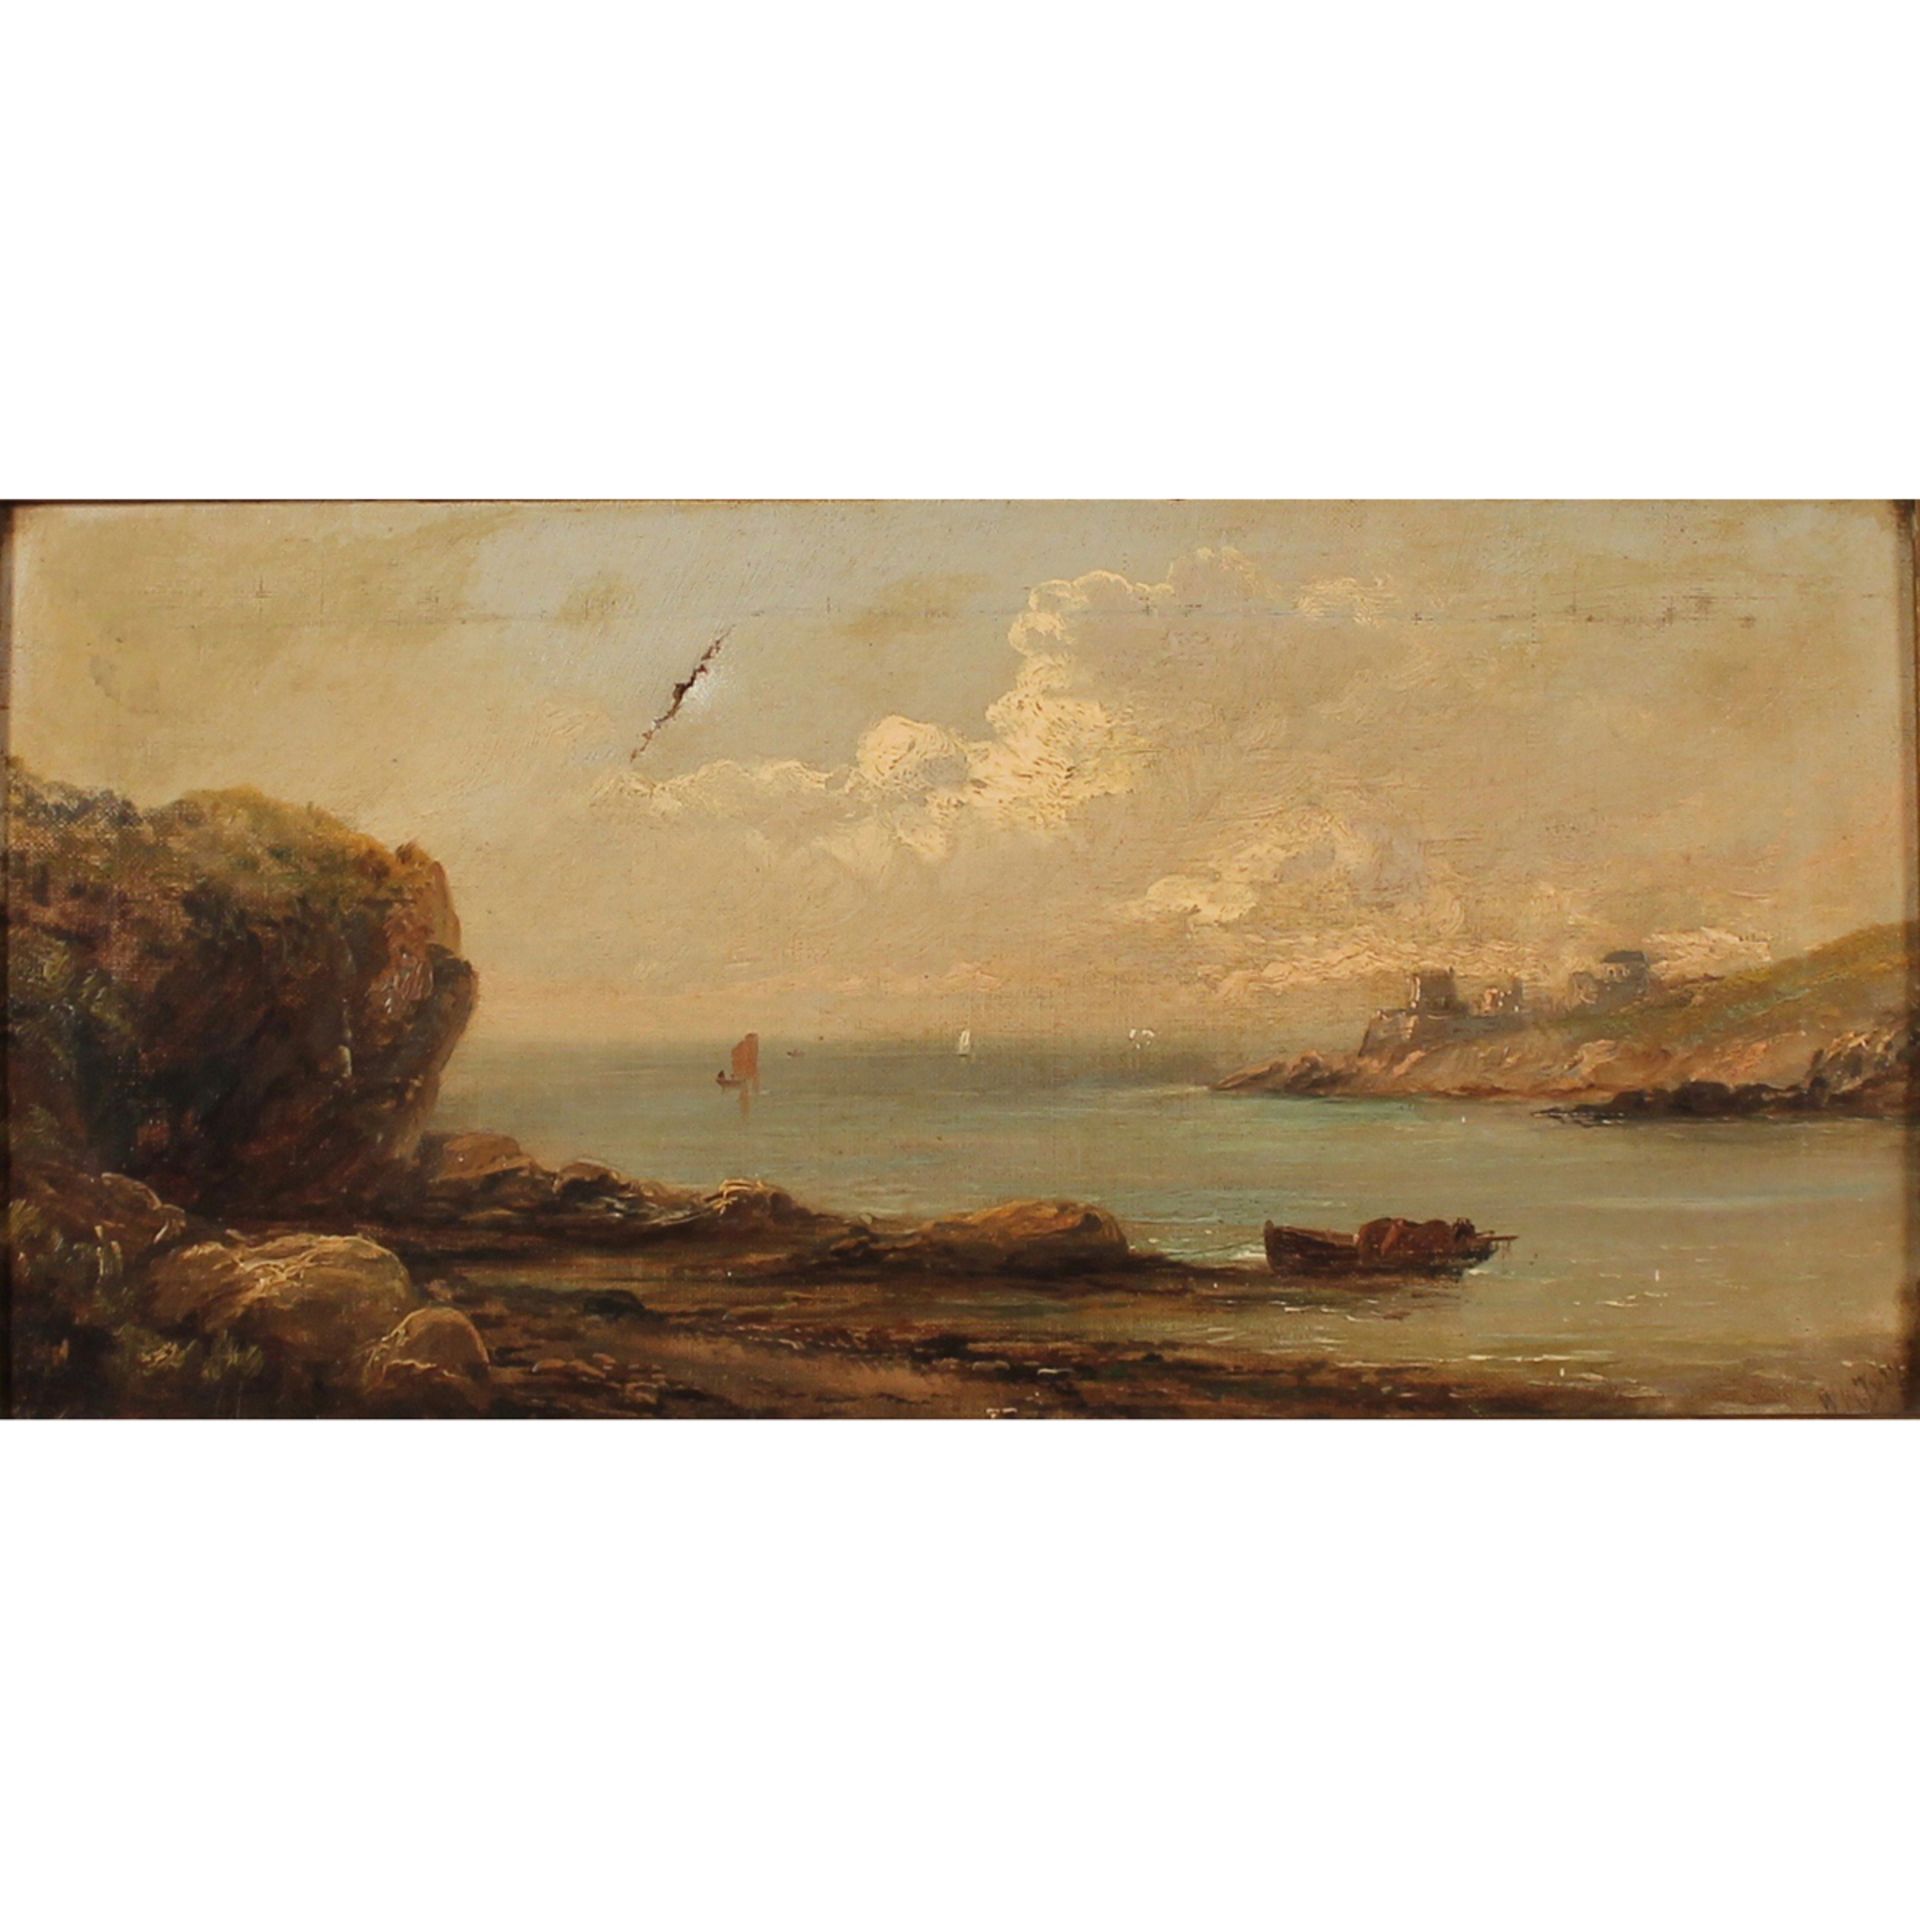 SCUOLA INGLESE DEL SECOLO XIX "Paesaggio marino con casolari sullo sfondo" - 19th CENTURY ENGLISH SC